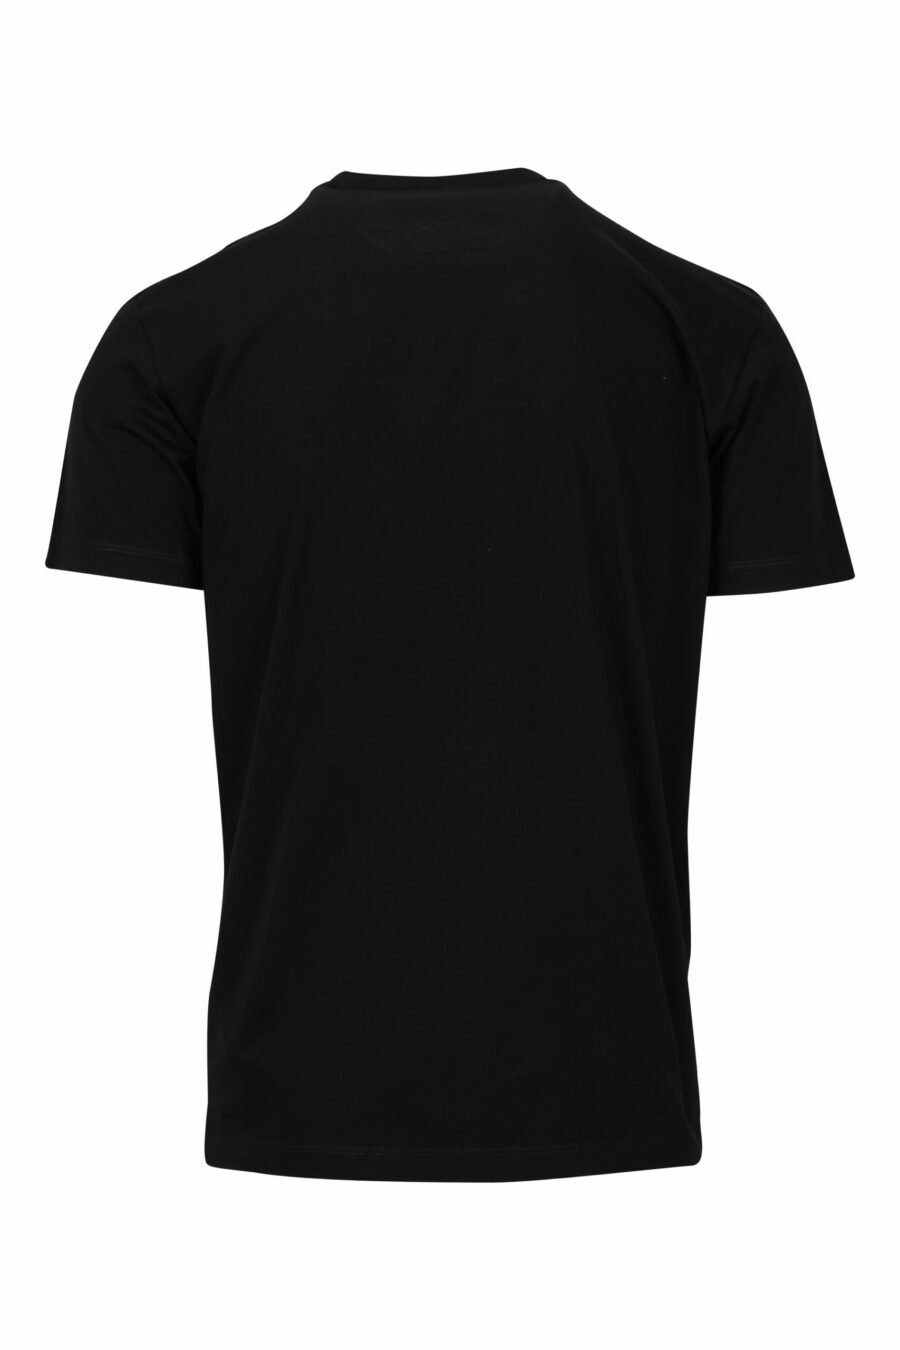 Schwarzes T-Shirt mit klassischem Logo in Weiß - 8054148159870 1 skaliert